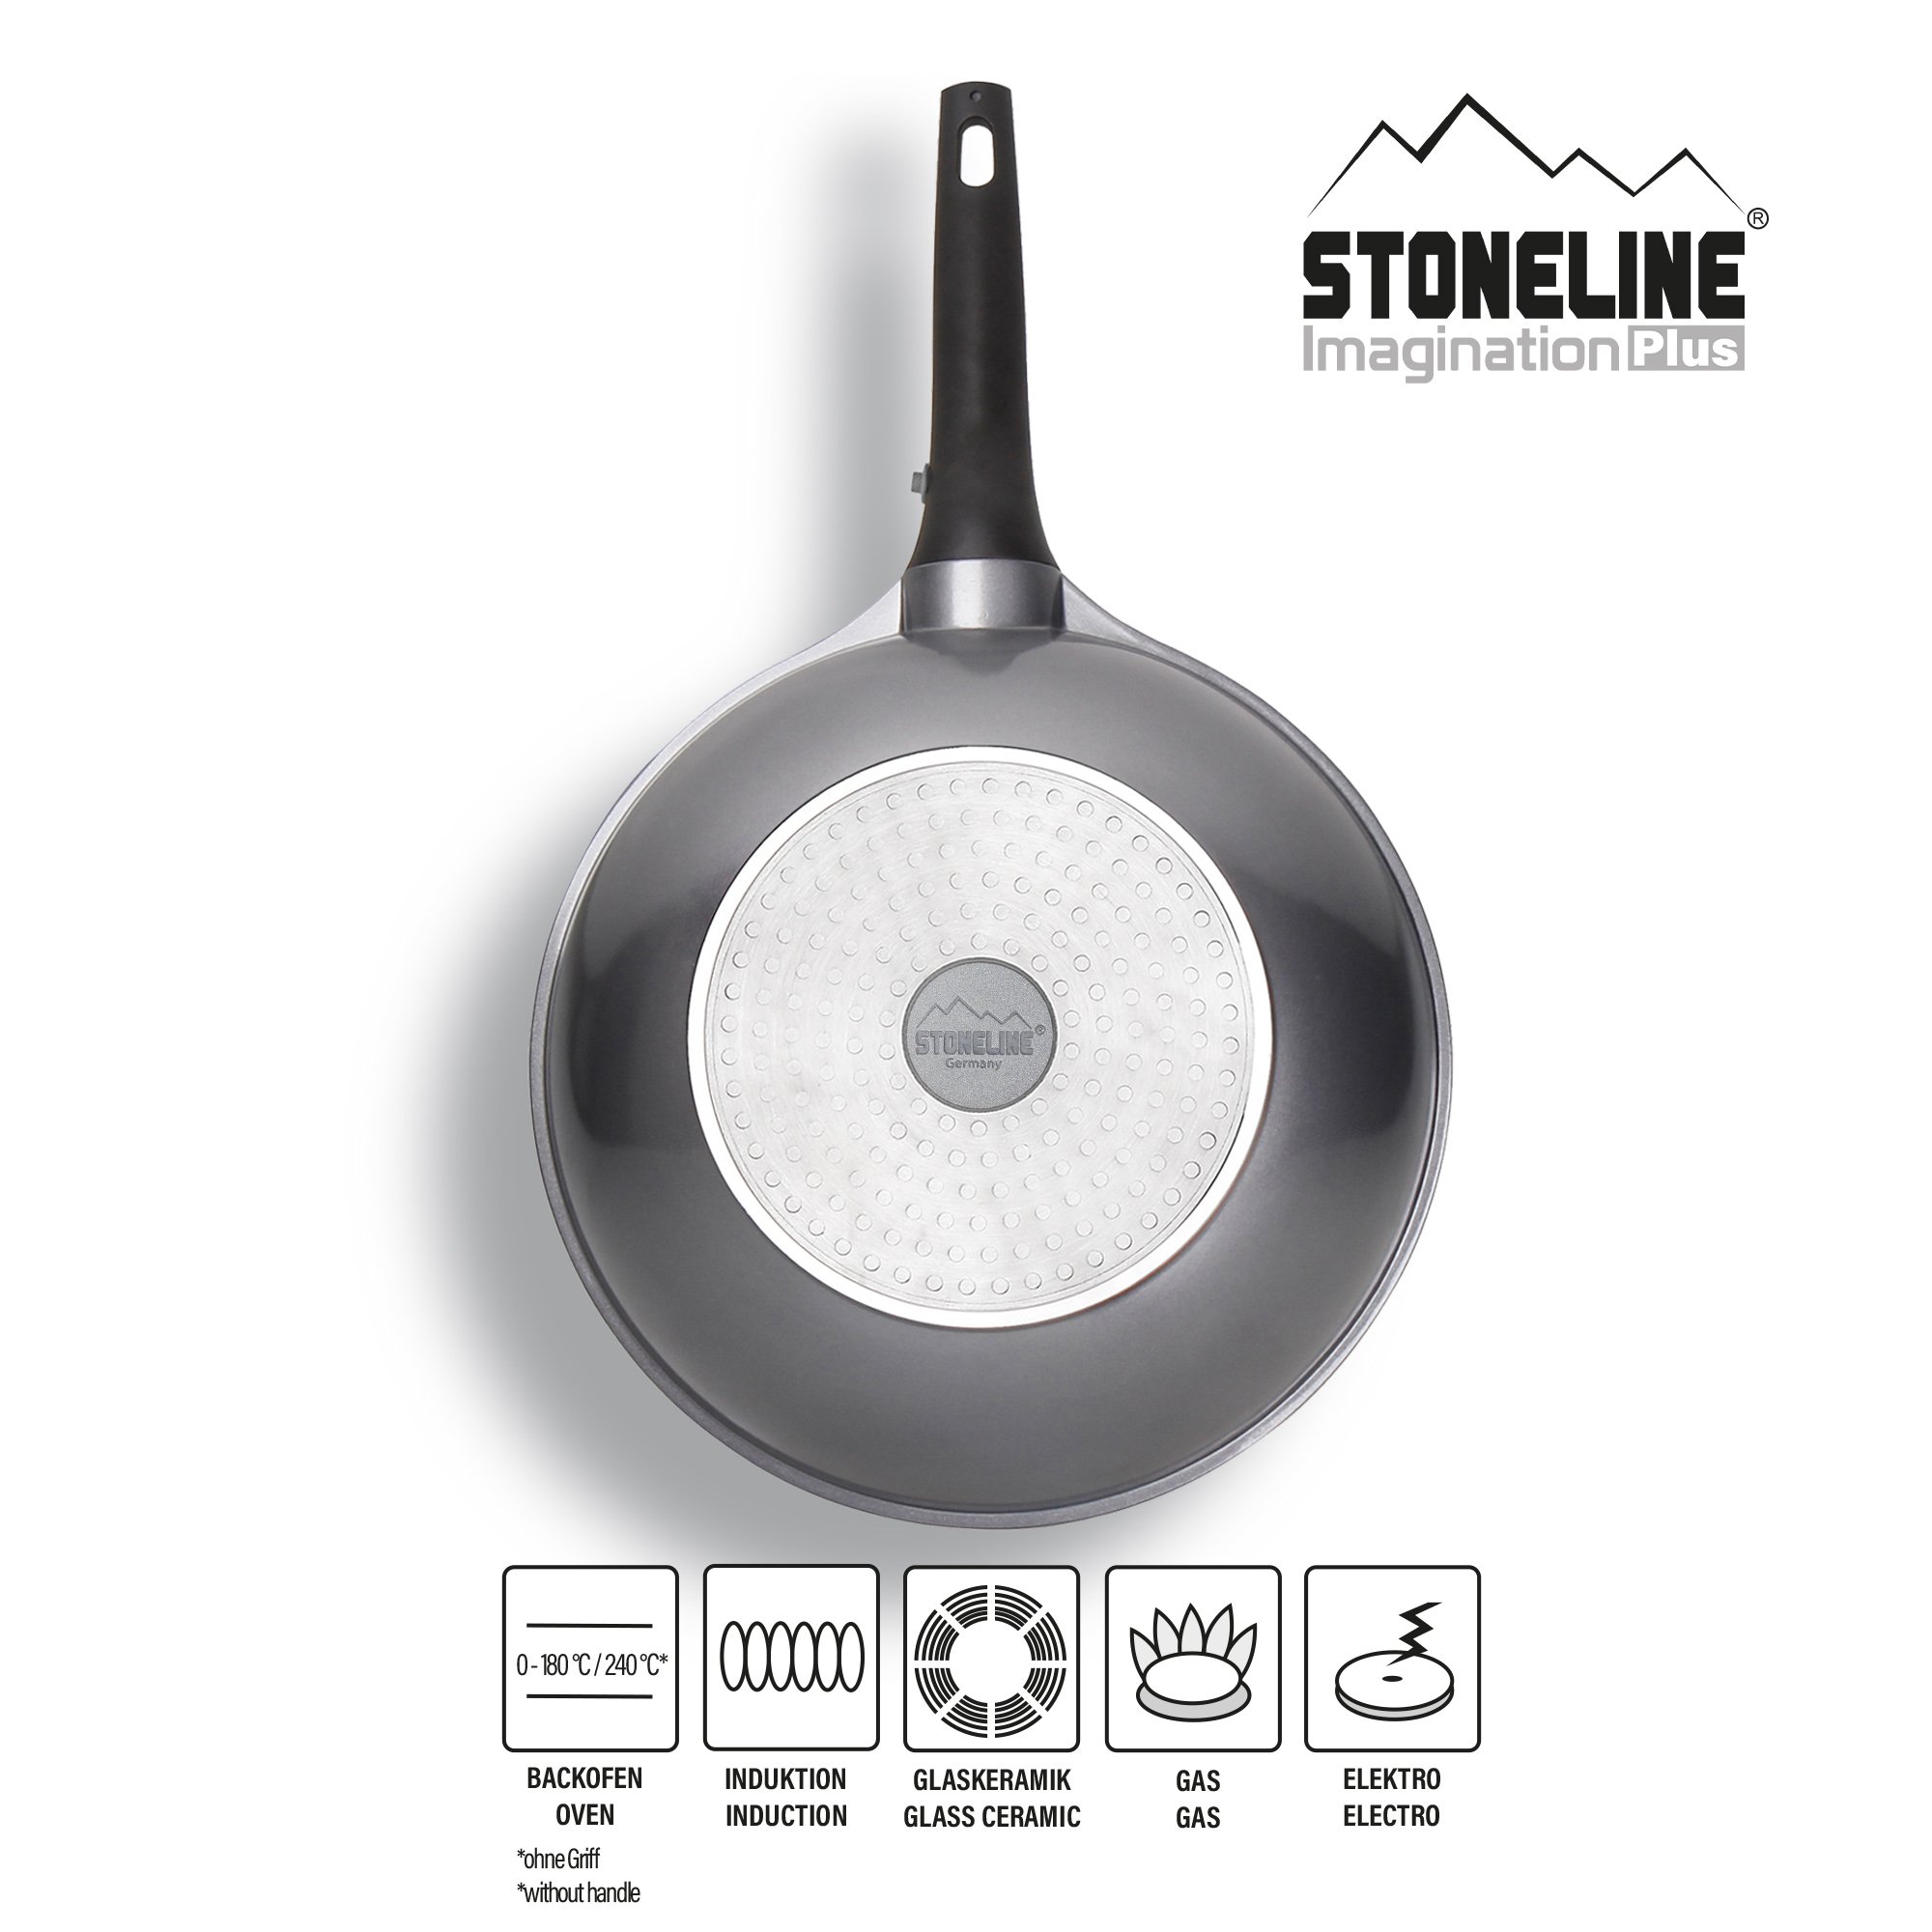 STONELINE® Wok Pan 30 cm, Removable Handle, with Lid, Non-Stick Pan | Imagination PLUS